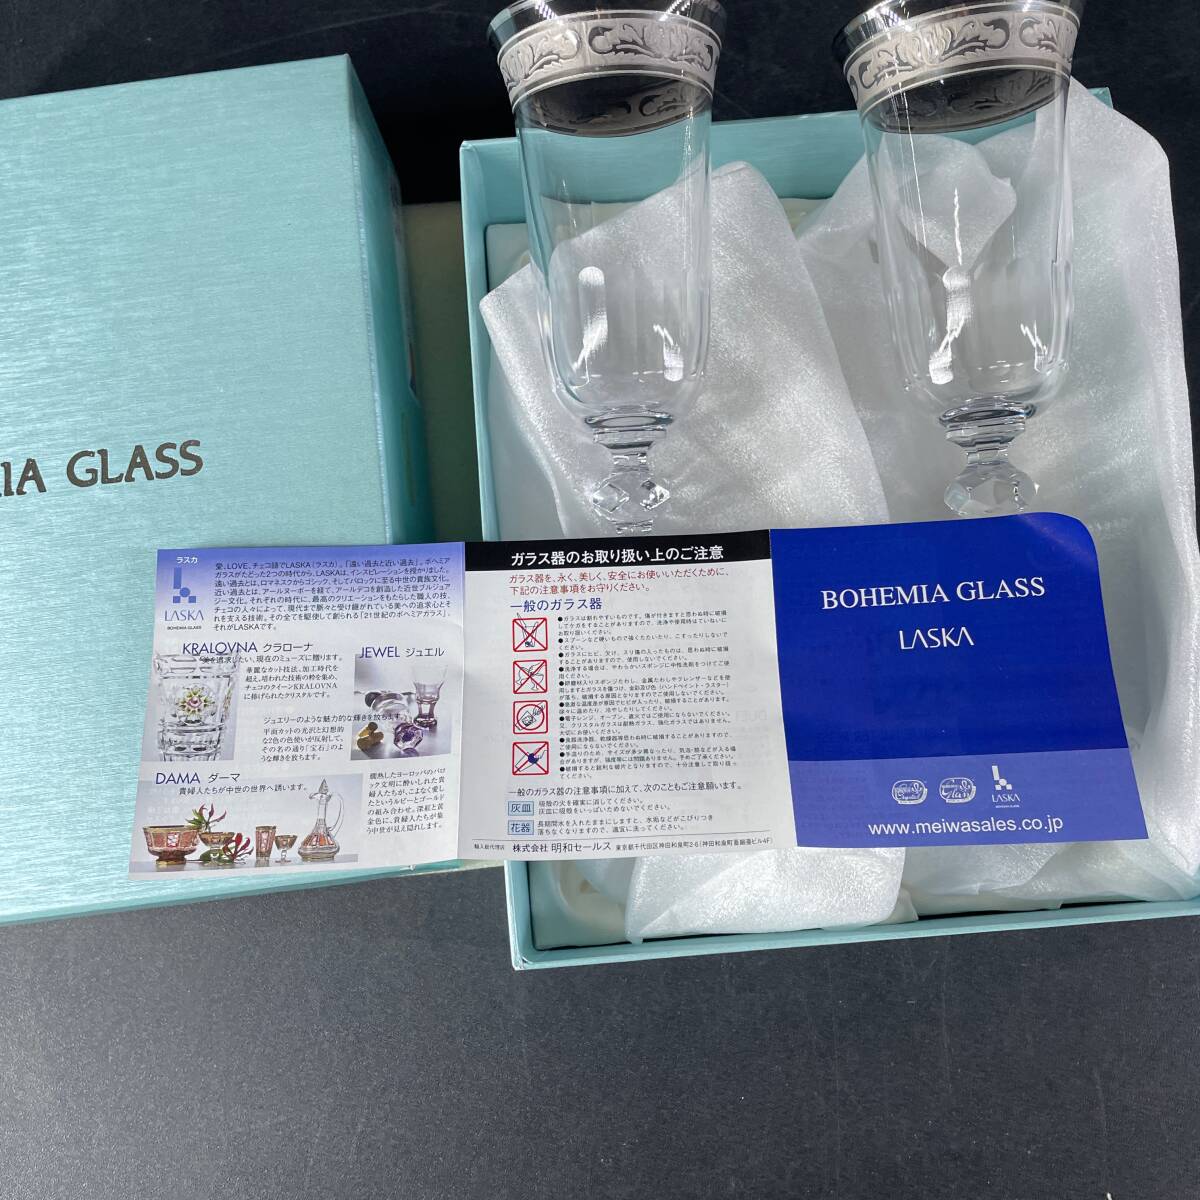 未使用 長期保管品 BOHEMIA GLASS LASKA ボヘミアングラス ボヘミア 硝子食器 酒器 グラス ワイン VR-5001 [MADE IN CZECH REPUBLIC]/u14aの画像2